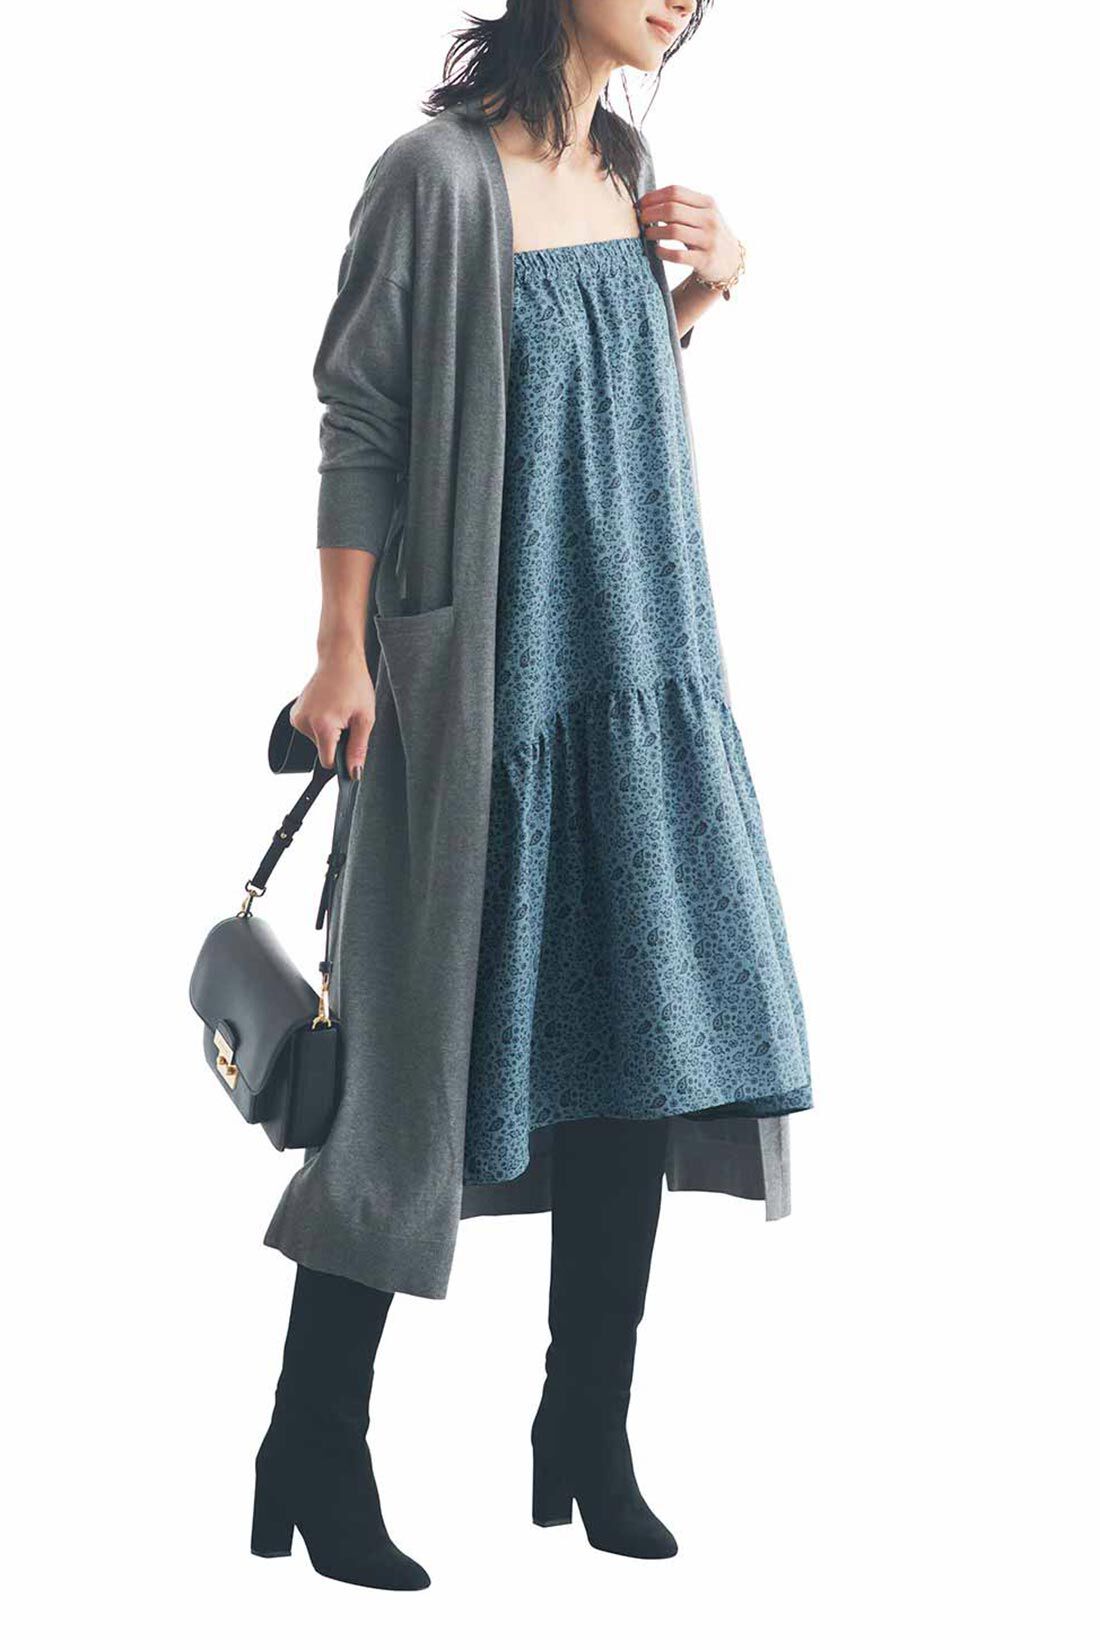 Real Stock|IEDIT[イディット]　福田麻琴さんコラボ 着まわし力抜群の2-WAYスカート〈グレイッシュブルー〉|キャミワンピとしても着られます。